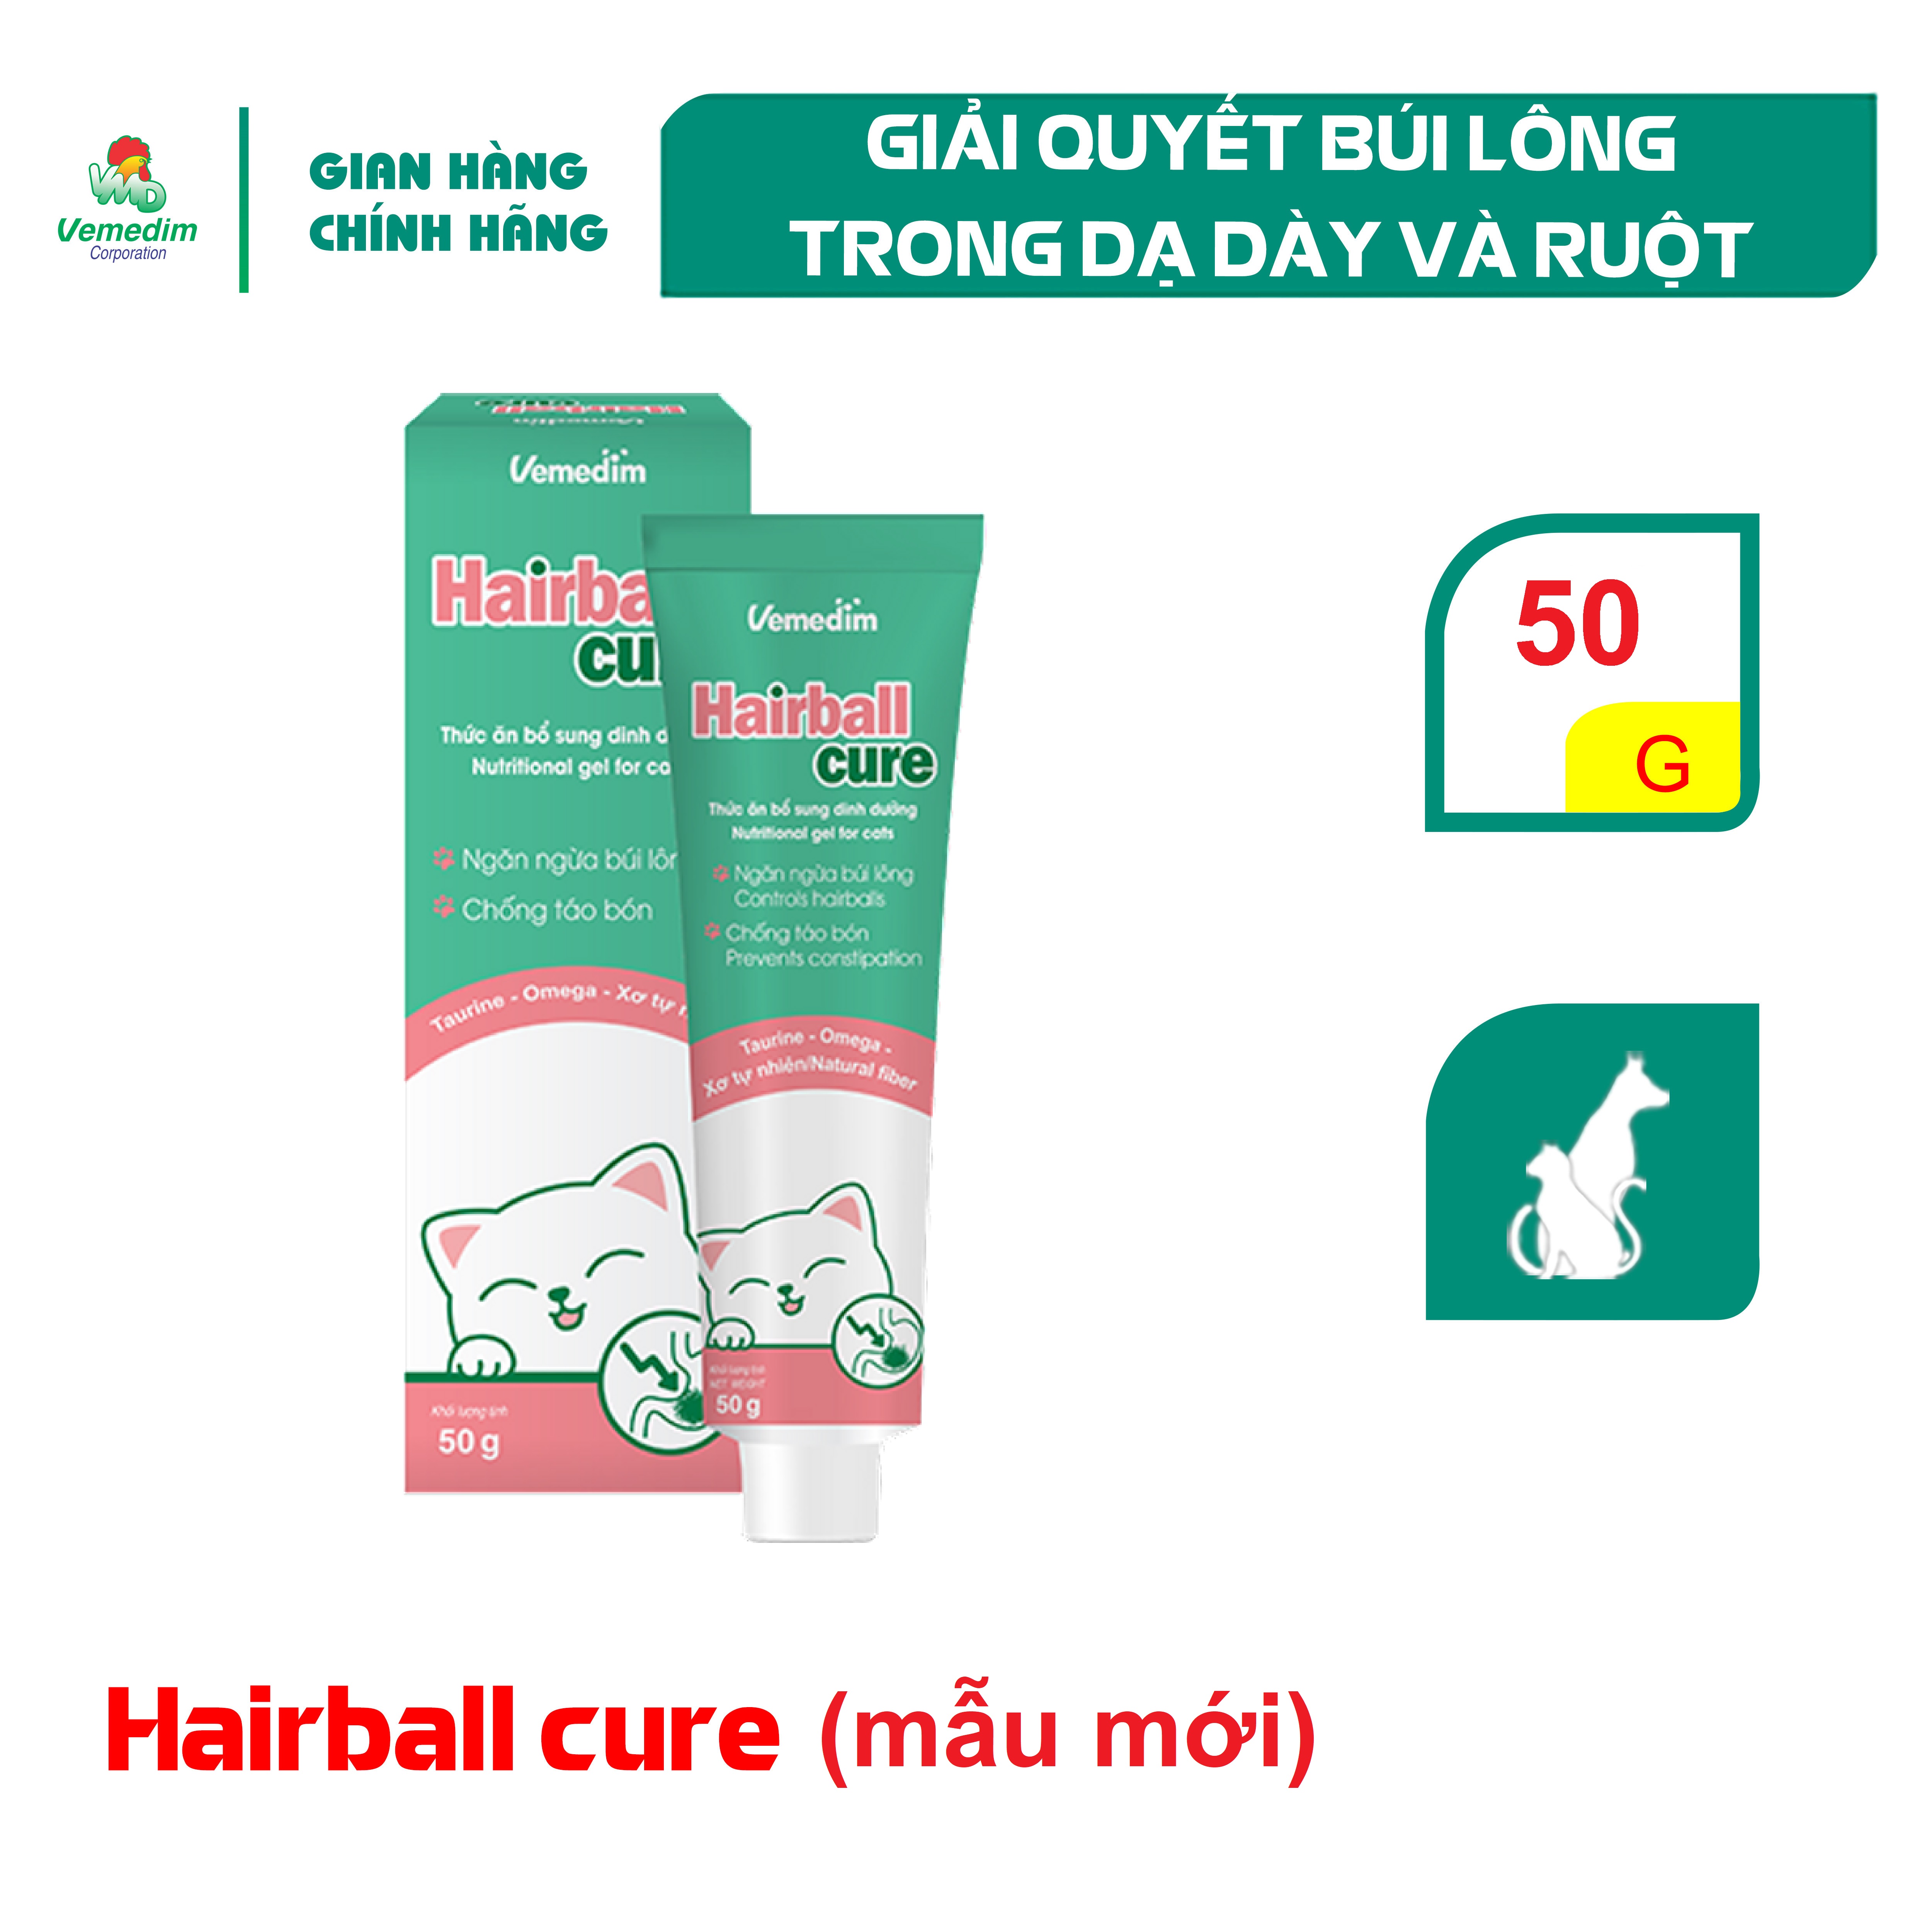 Vemedim Hairball cure giải quyết búi lông trong dạ dày và ruột, hỗ trợ tiêu hóa chó mèo, tuýp nhôm mới 50g